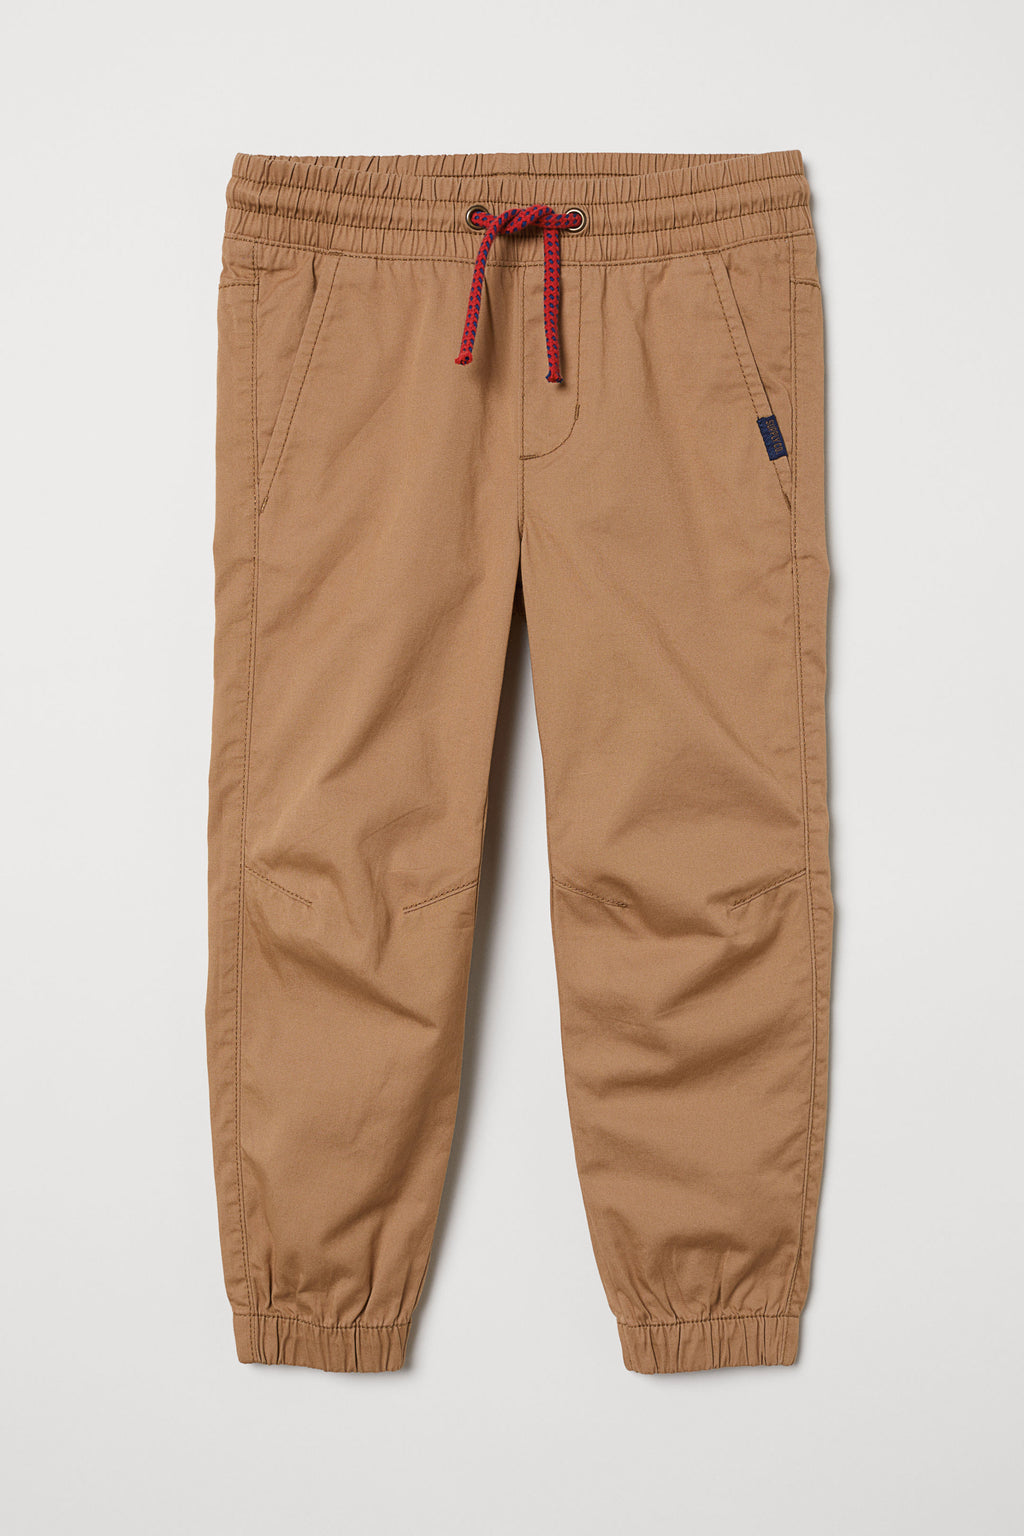 Pantalon Joggers H&M Cotton Pull-on Pants